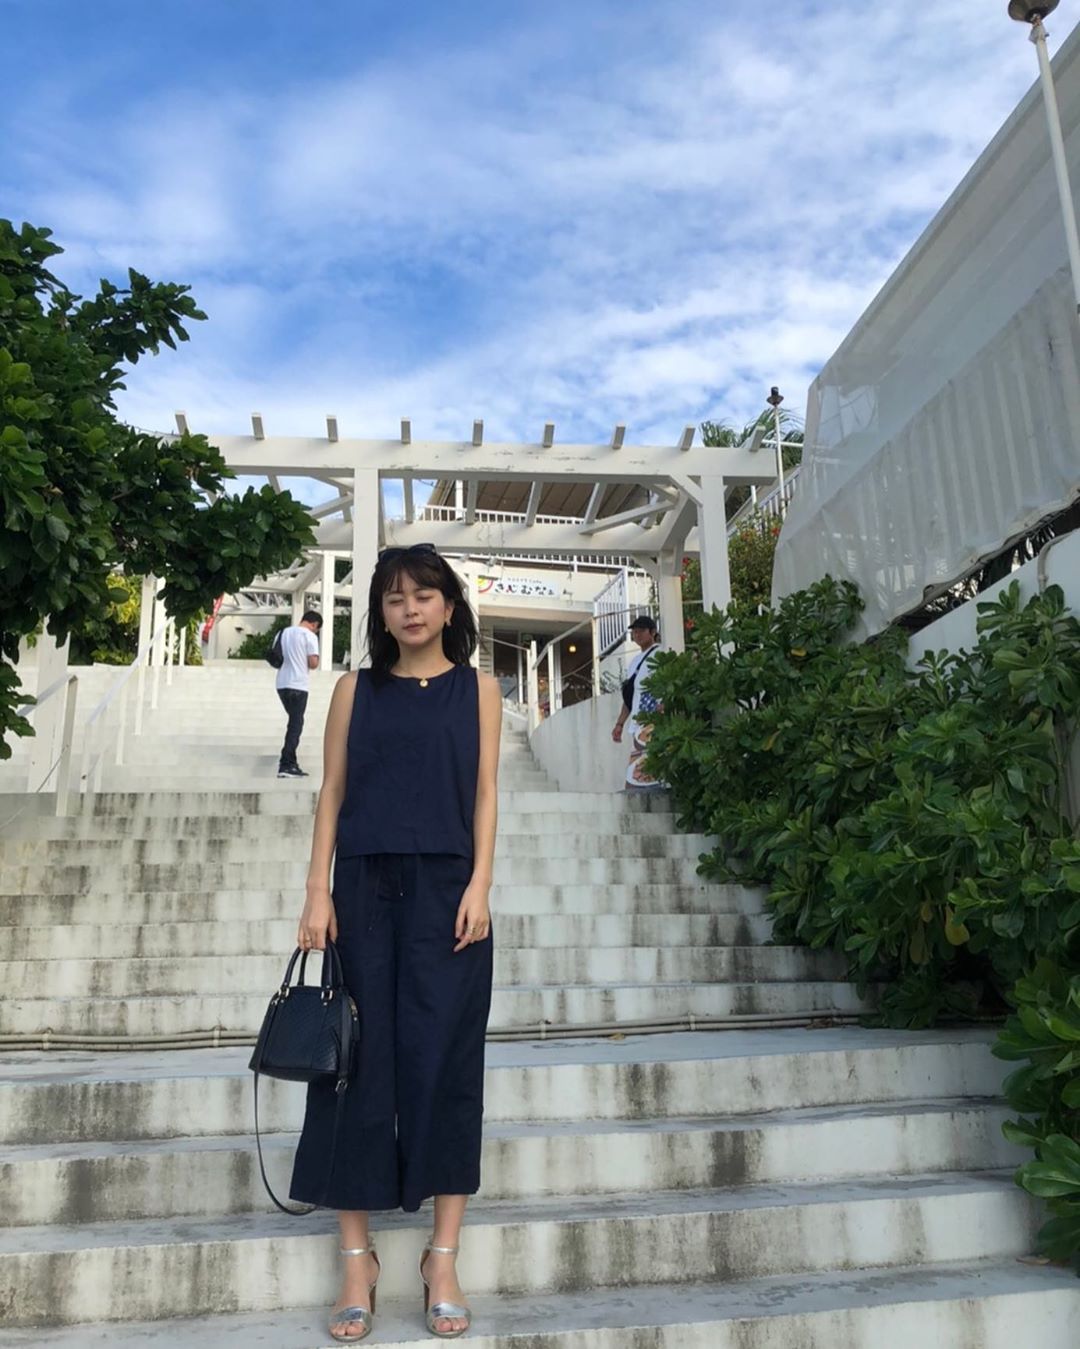 沖田愛加 on Instagram: “お気に入りの服#めをつぶってる”